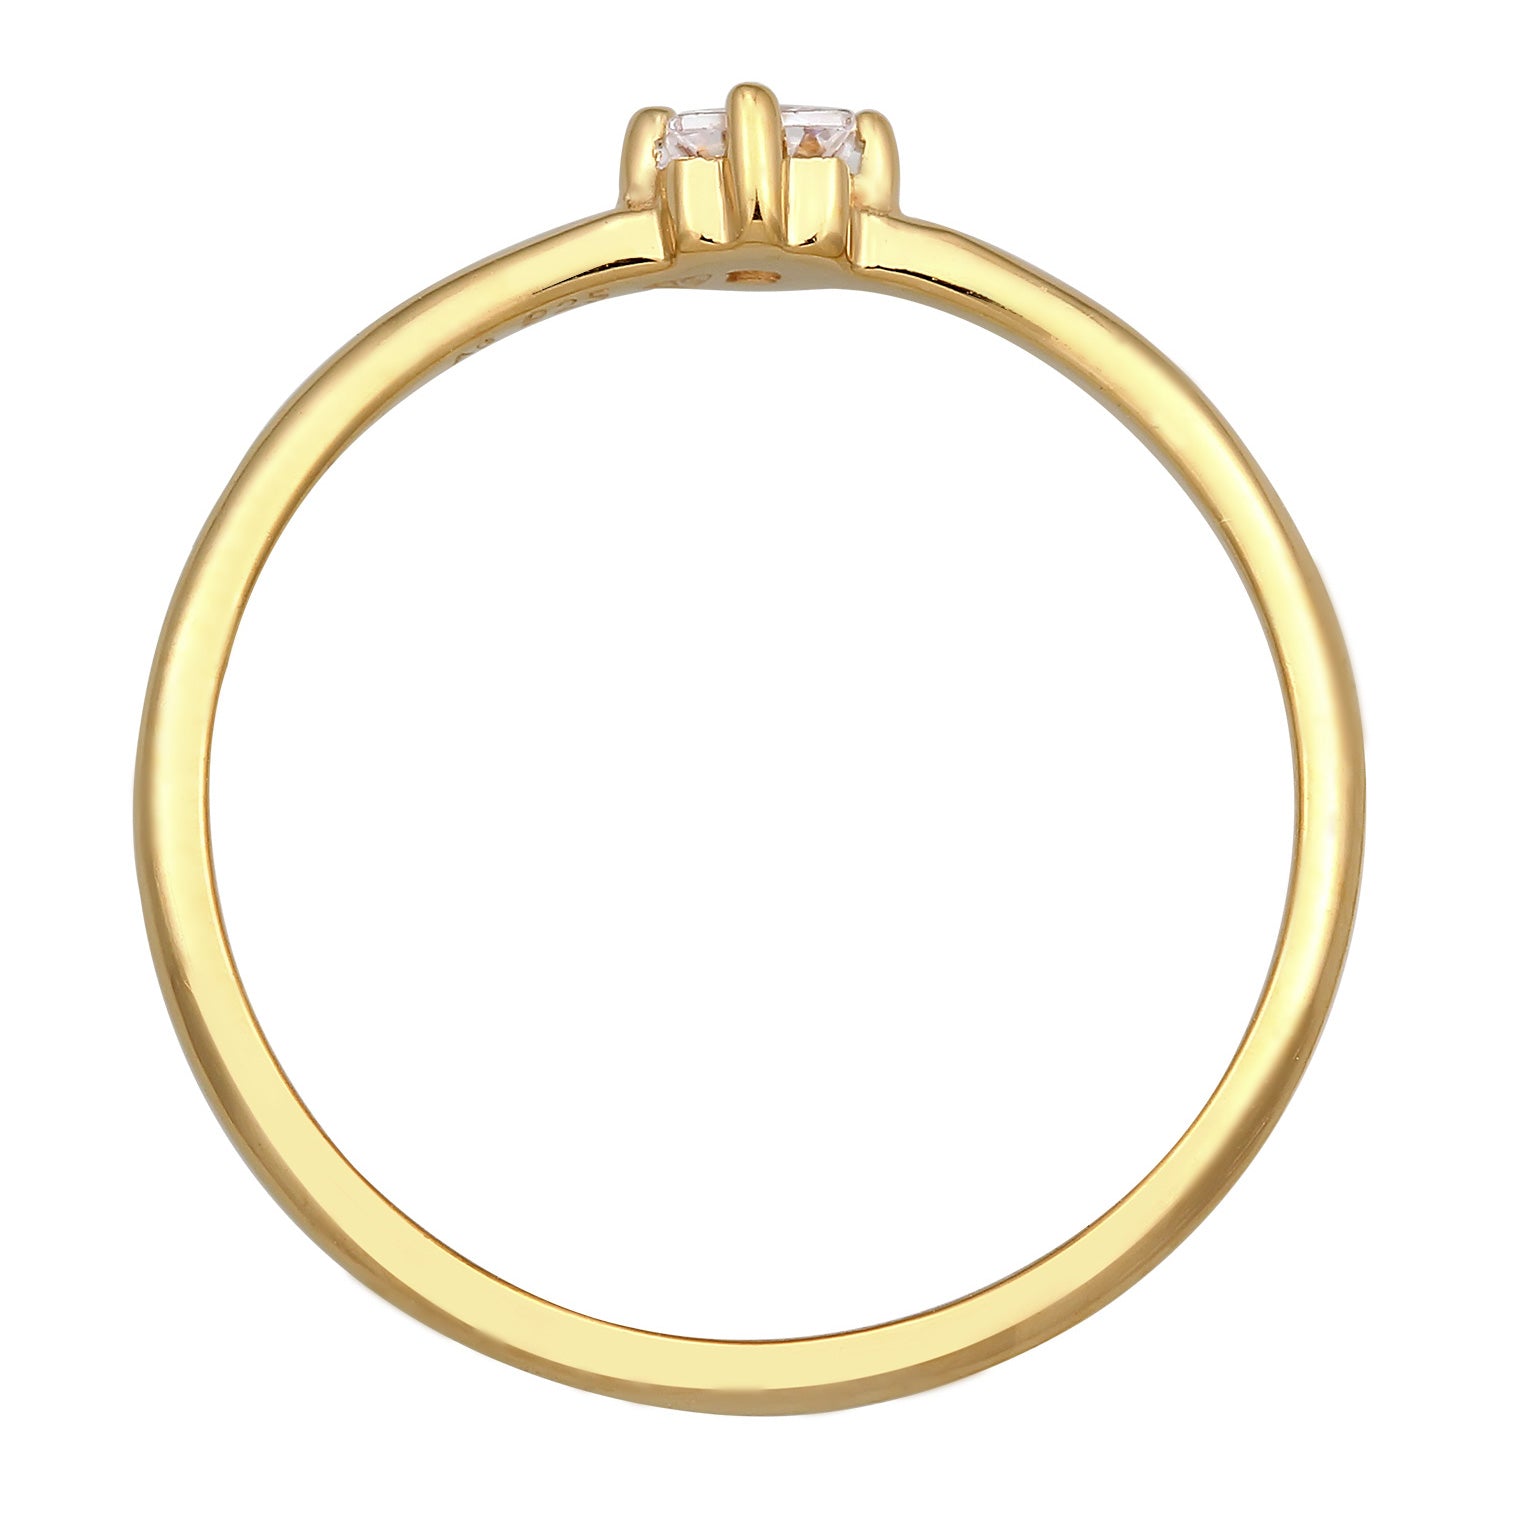 Gold - Elli | Solitär-Ring | Zirkonia Kristall (Weiß) | 925 Sterling Silber vergoldet